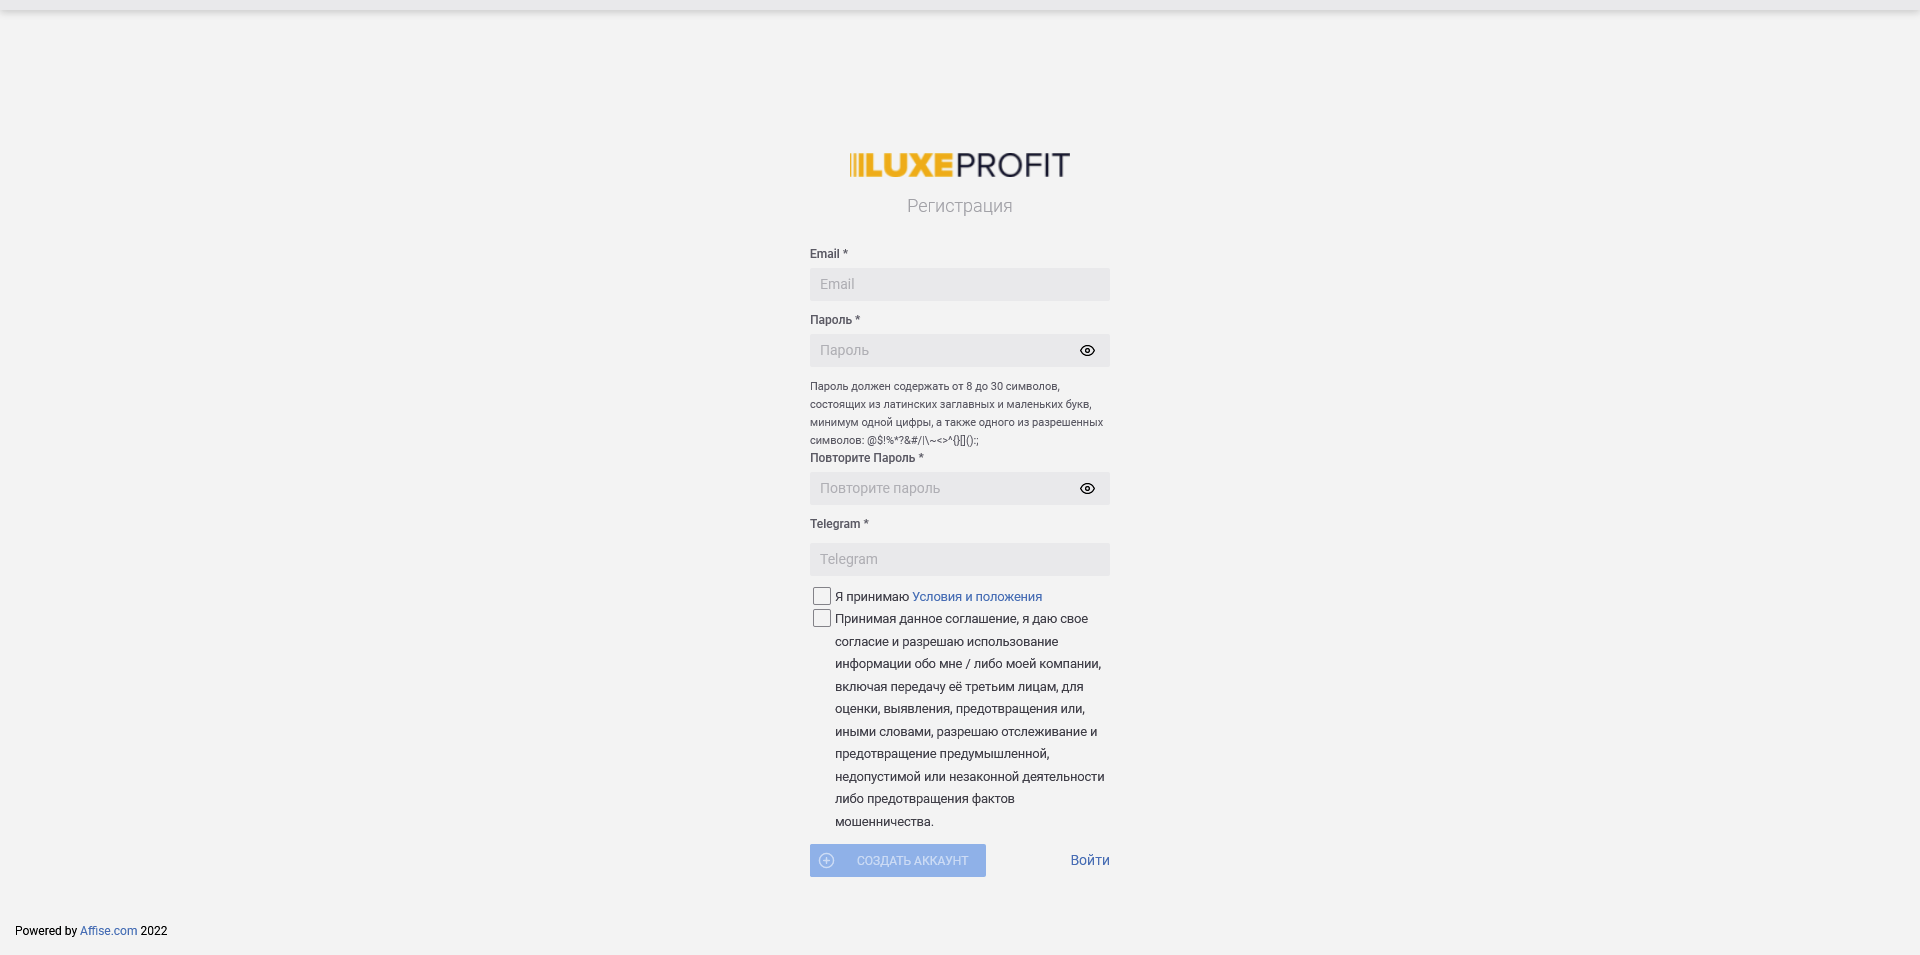 Luxeprofit — отзывы и обзор партнёрской сети